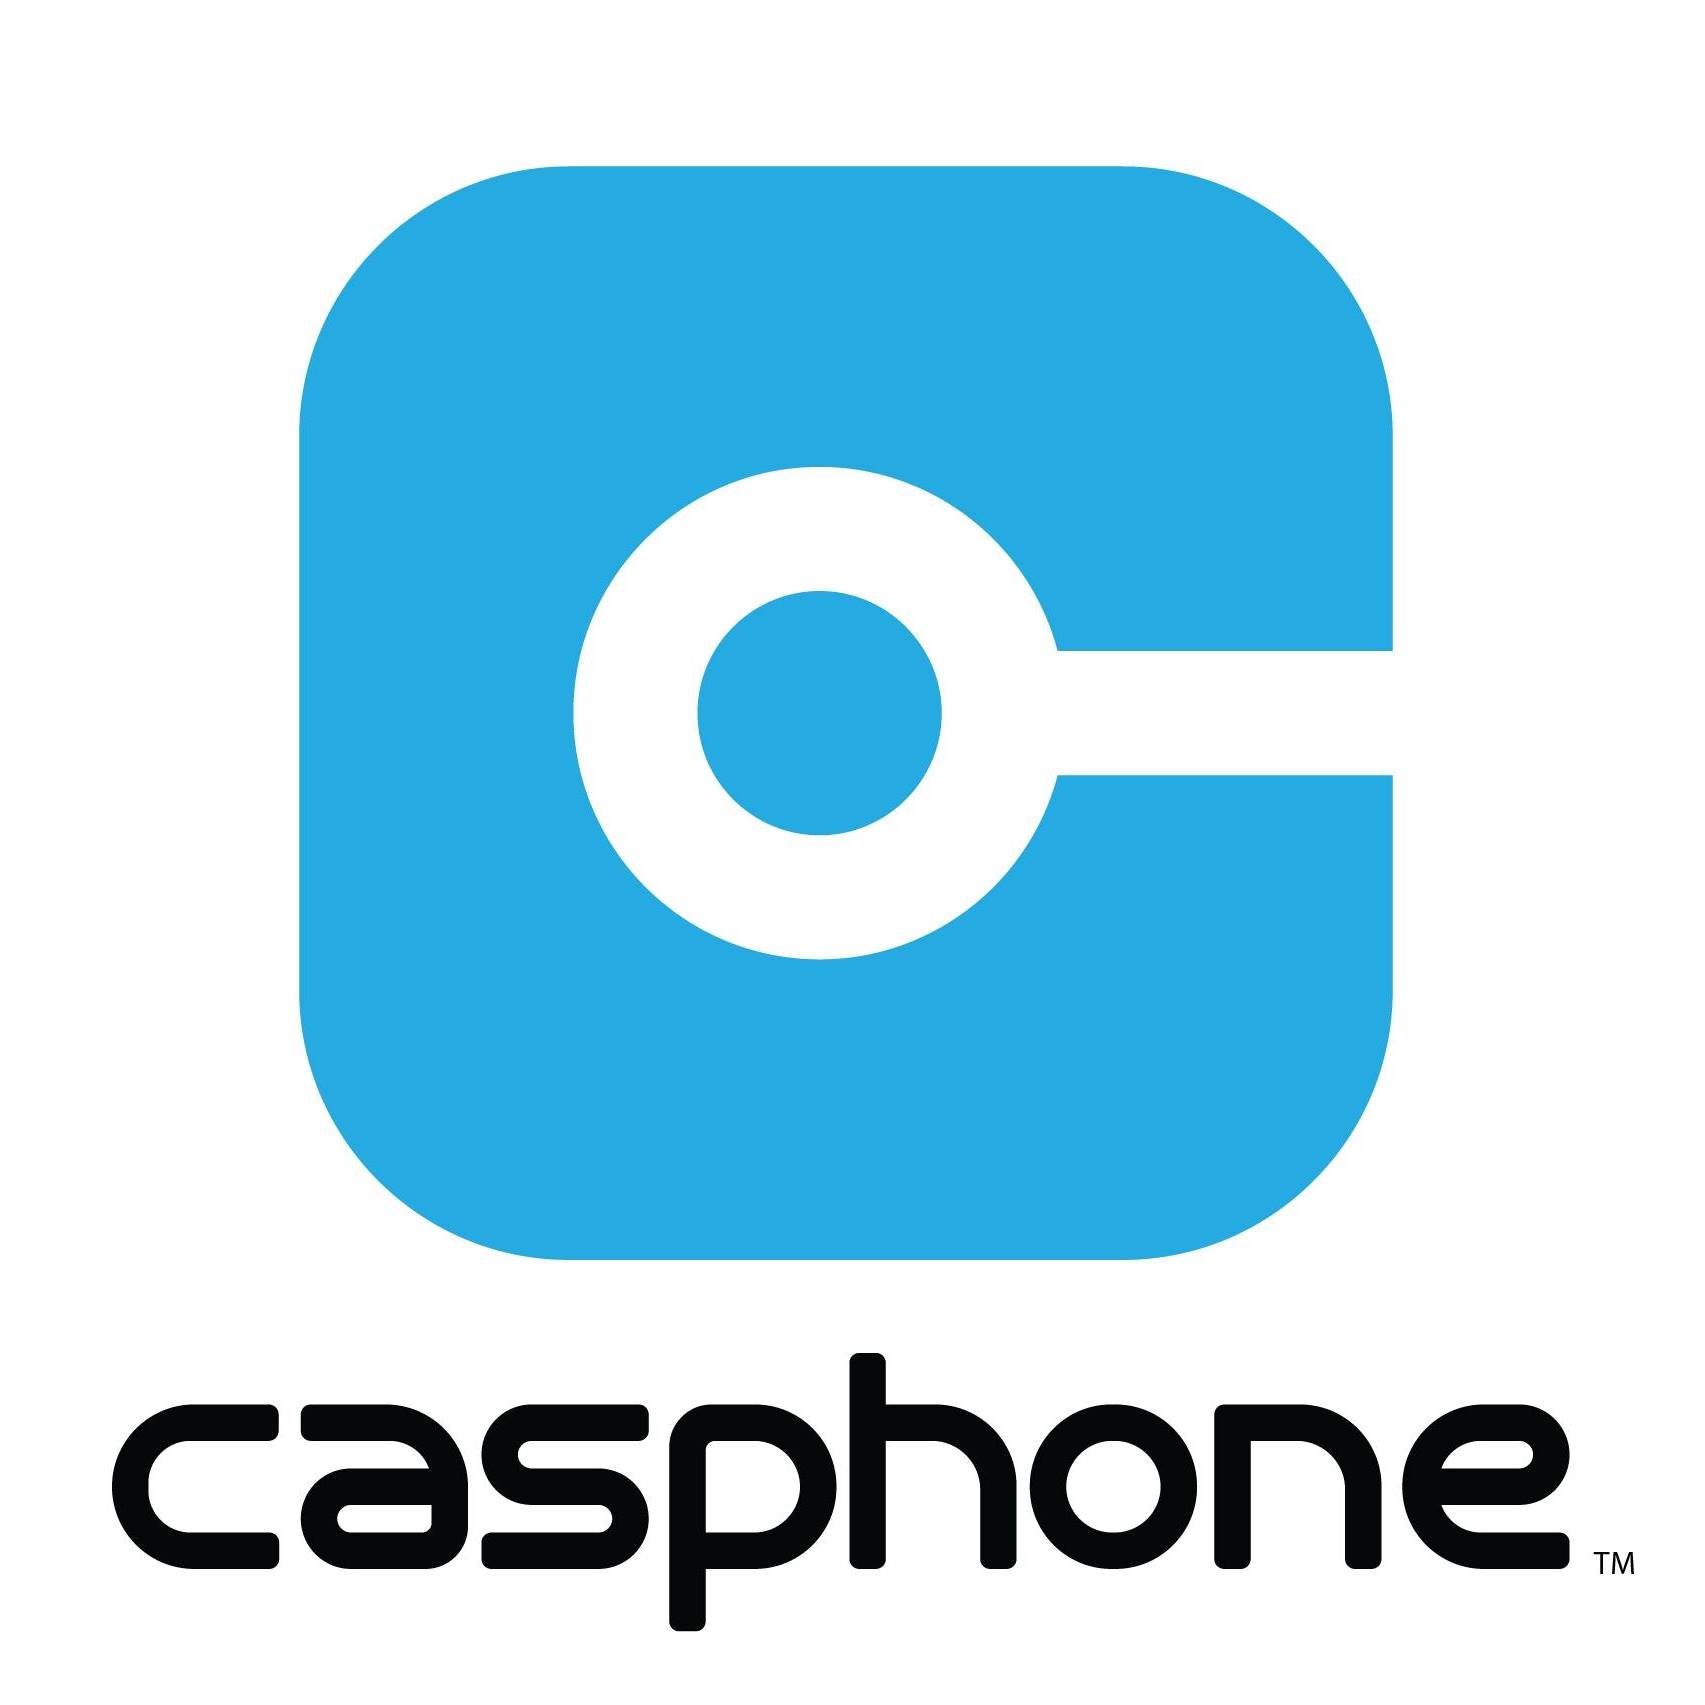 Casphone